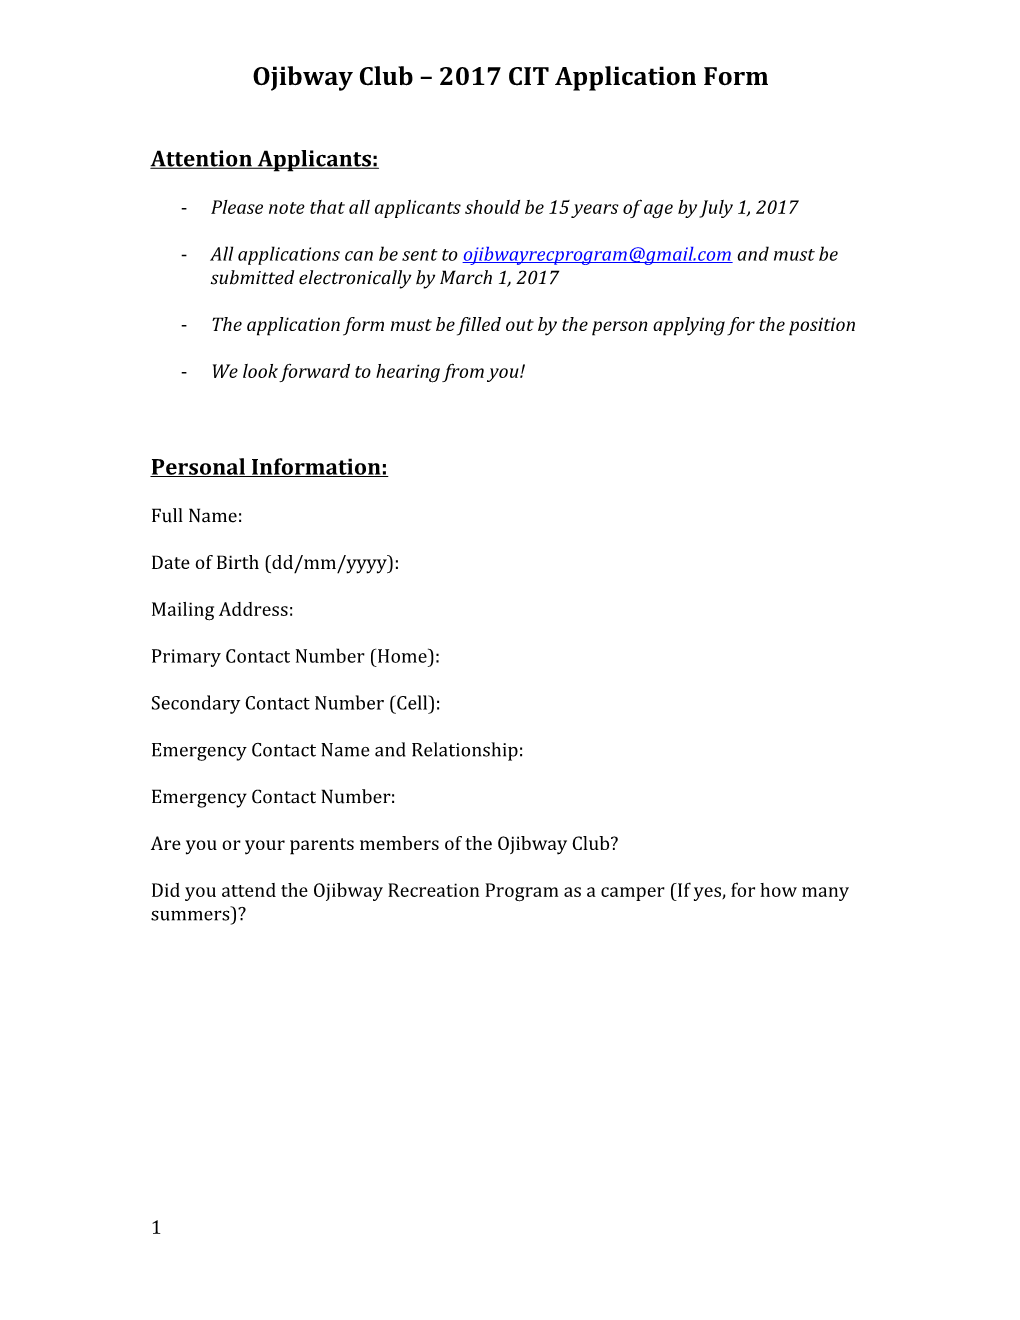 Ojibway Club 2017 CIT Application Form